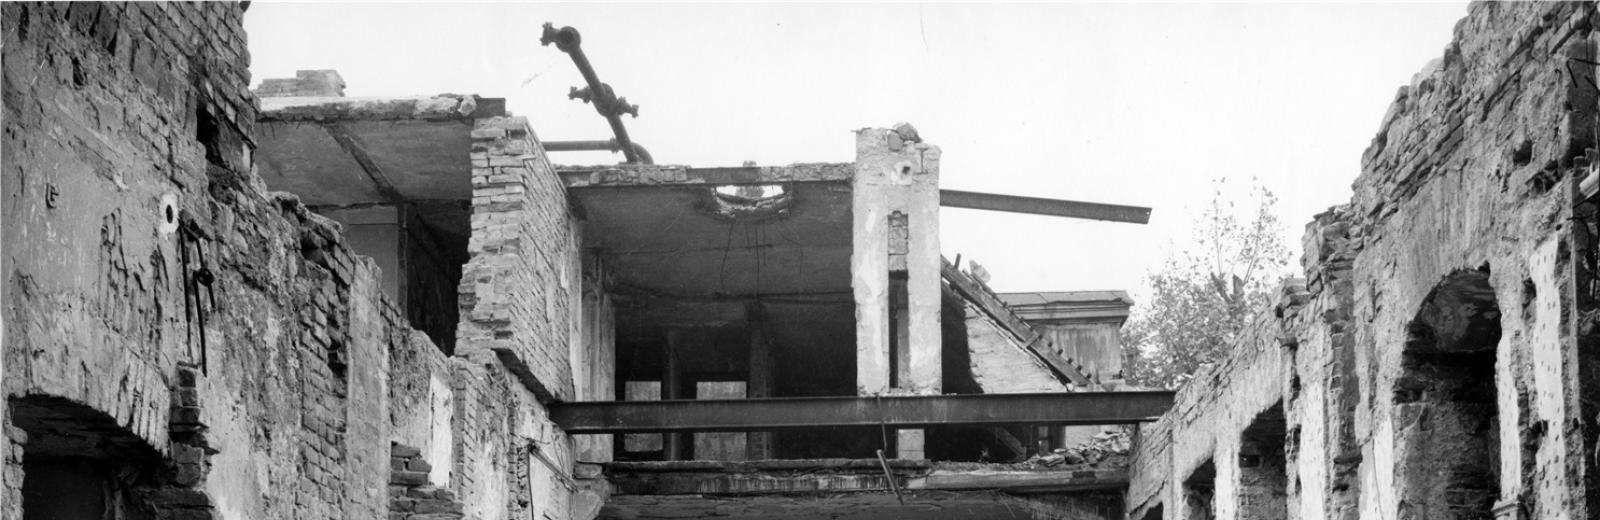 Carl Lutz nel cortile interno della legazione britannica distrutta © Archivio di storia contemporanea del PFZ / Agnes Hirschi